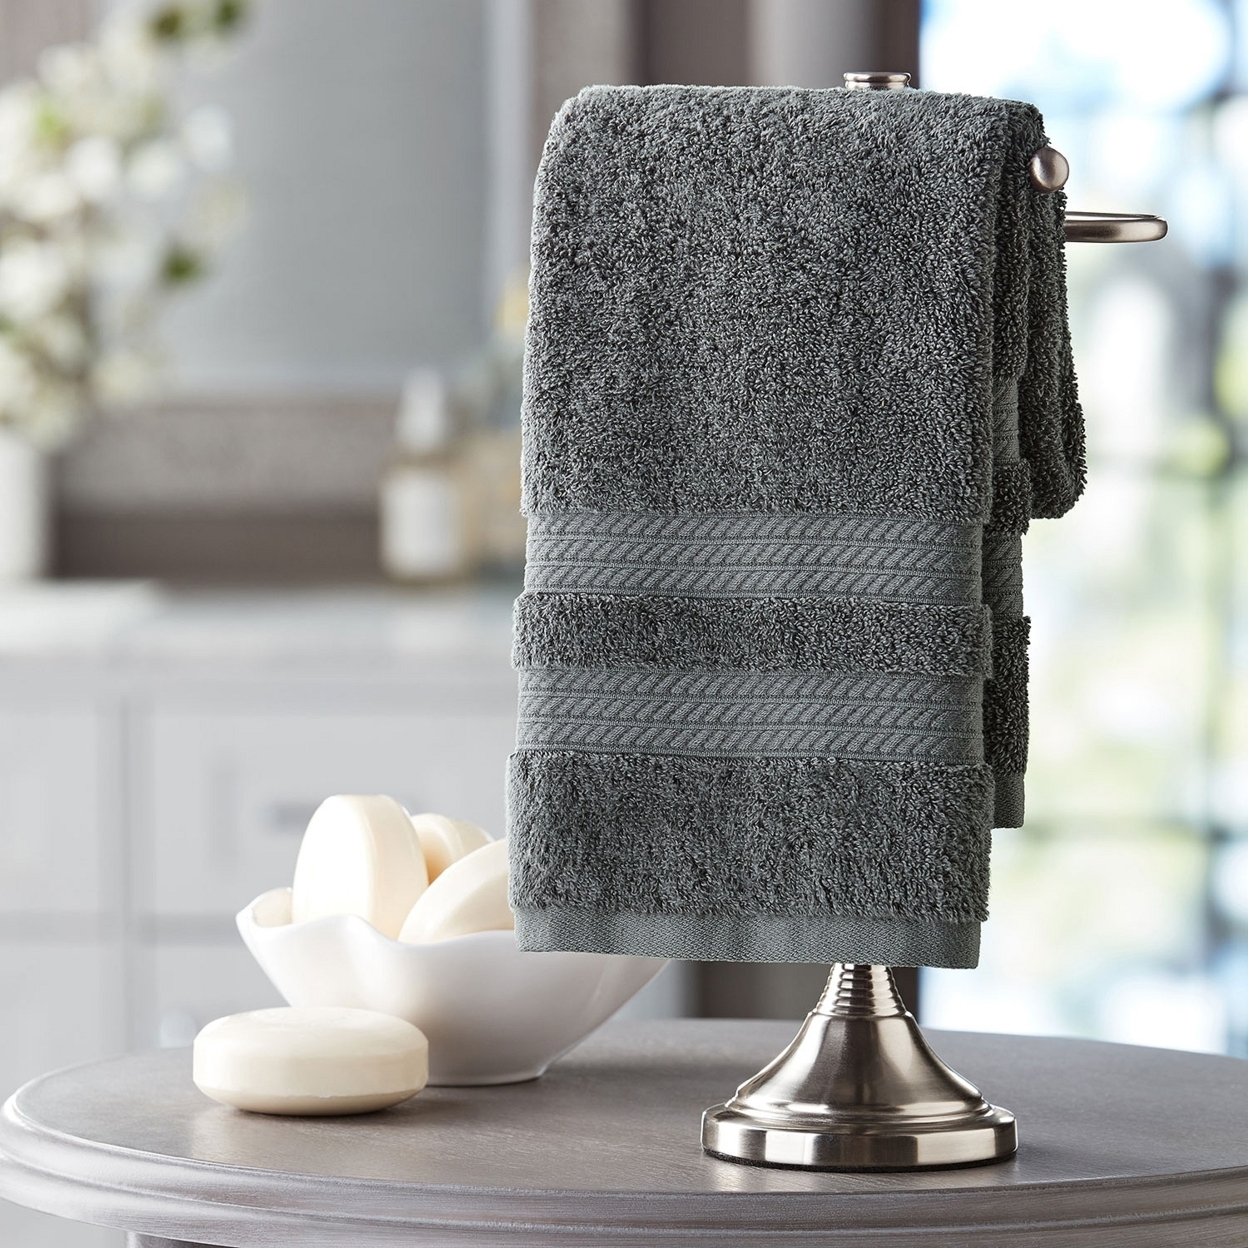 Hotel Premier Collection 100% Cotton Luxury Hand Towel, Dark Grey